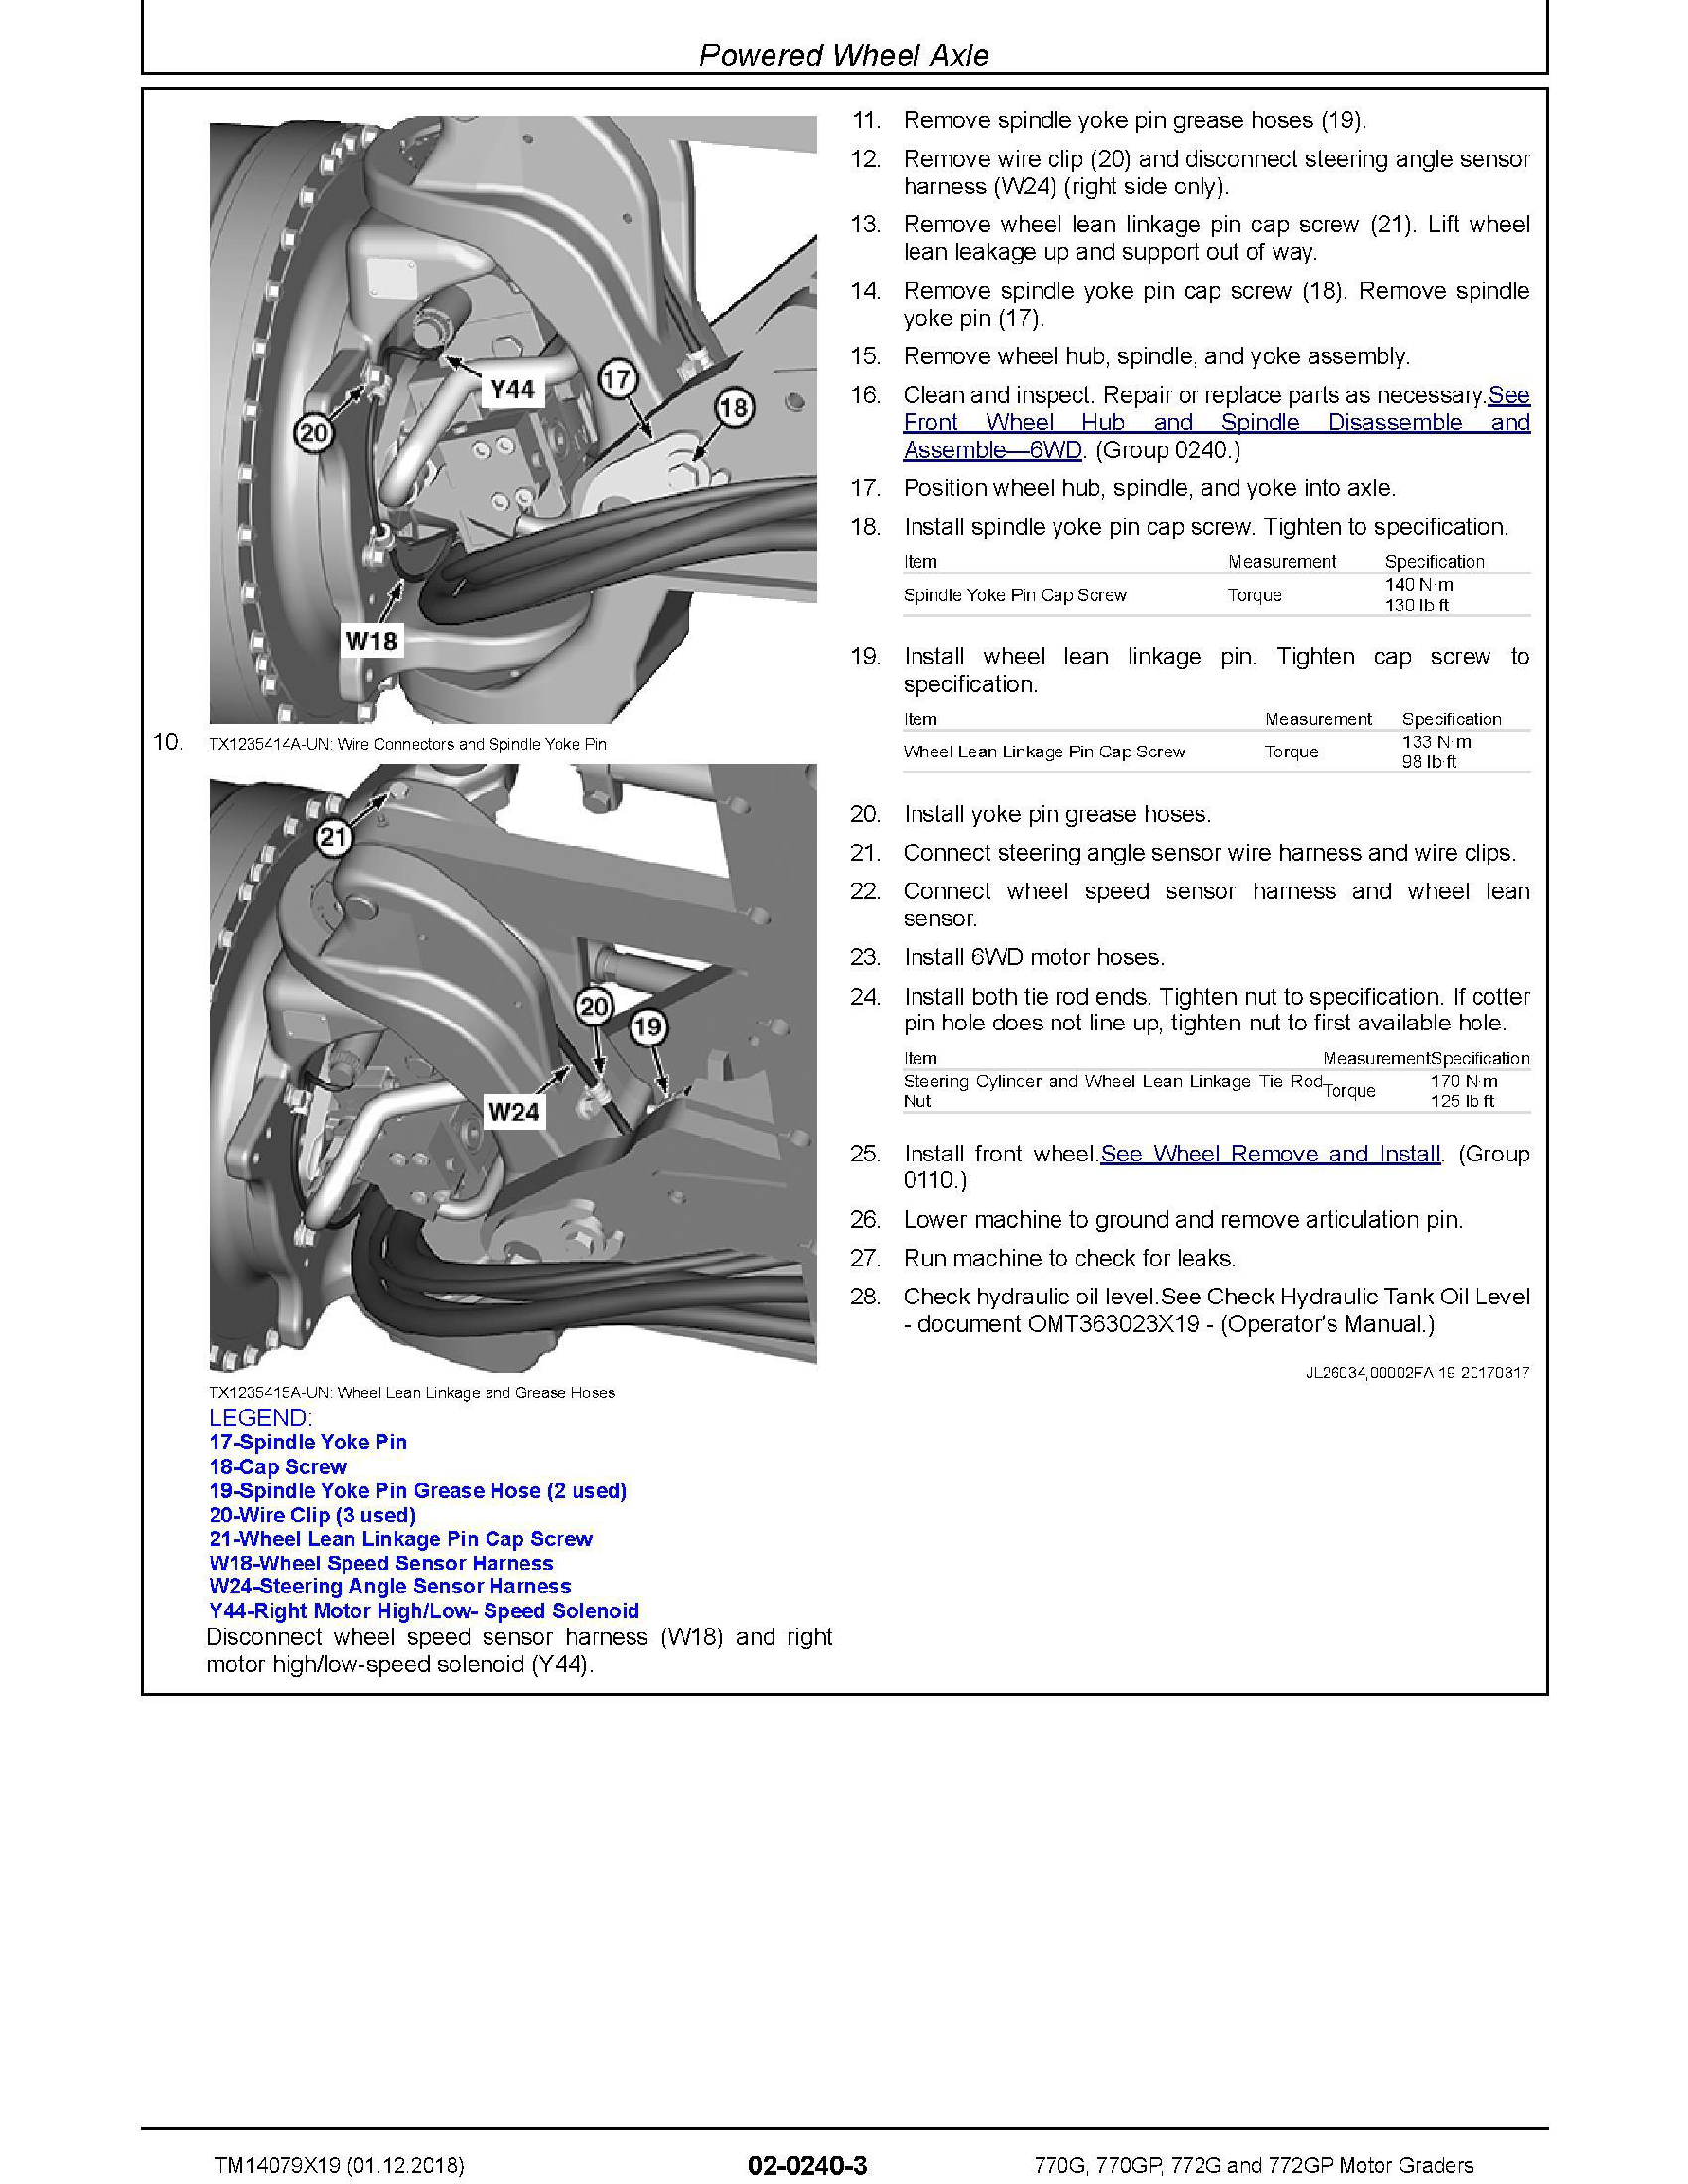 John Deere 190W-5N manual pdf